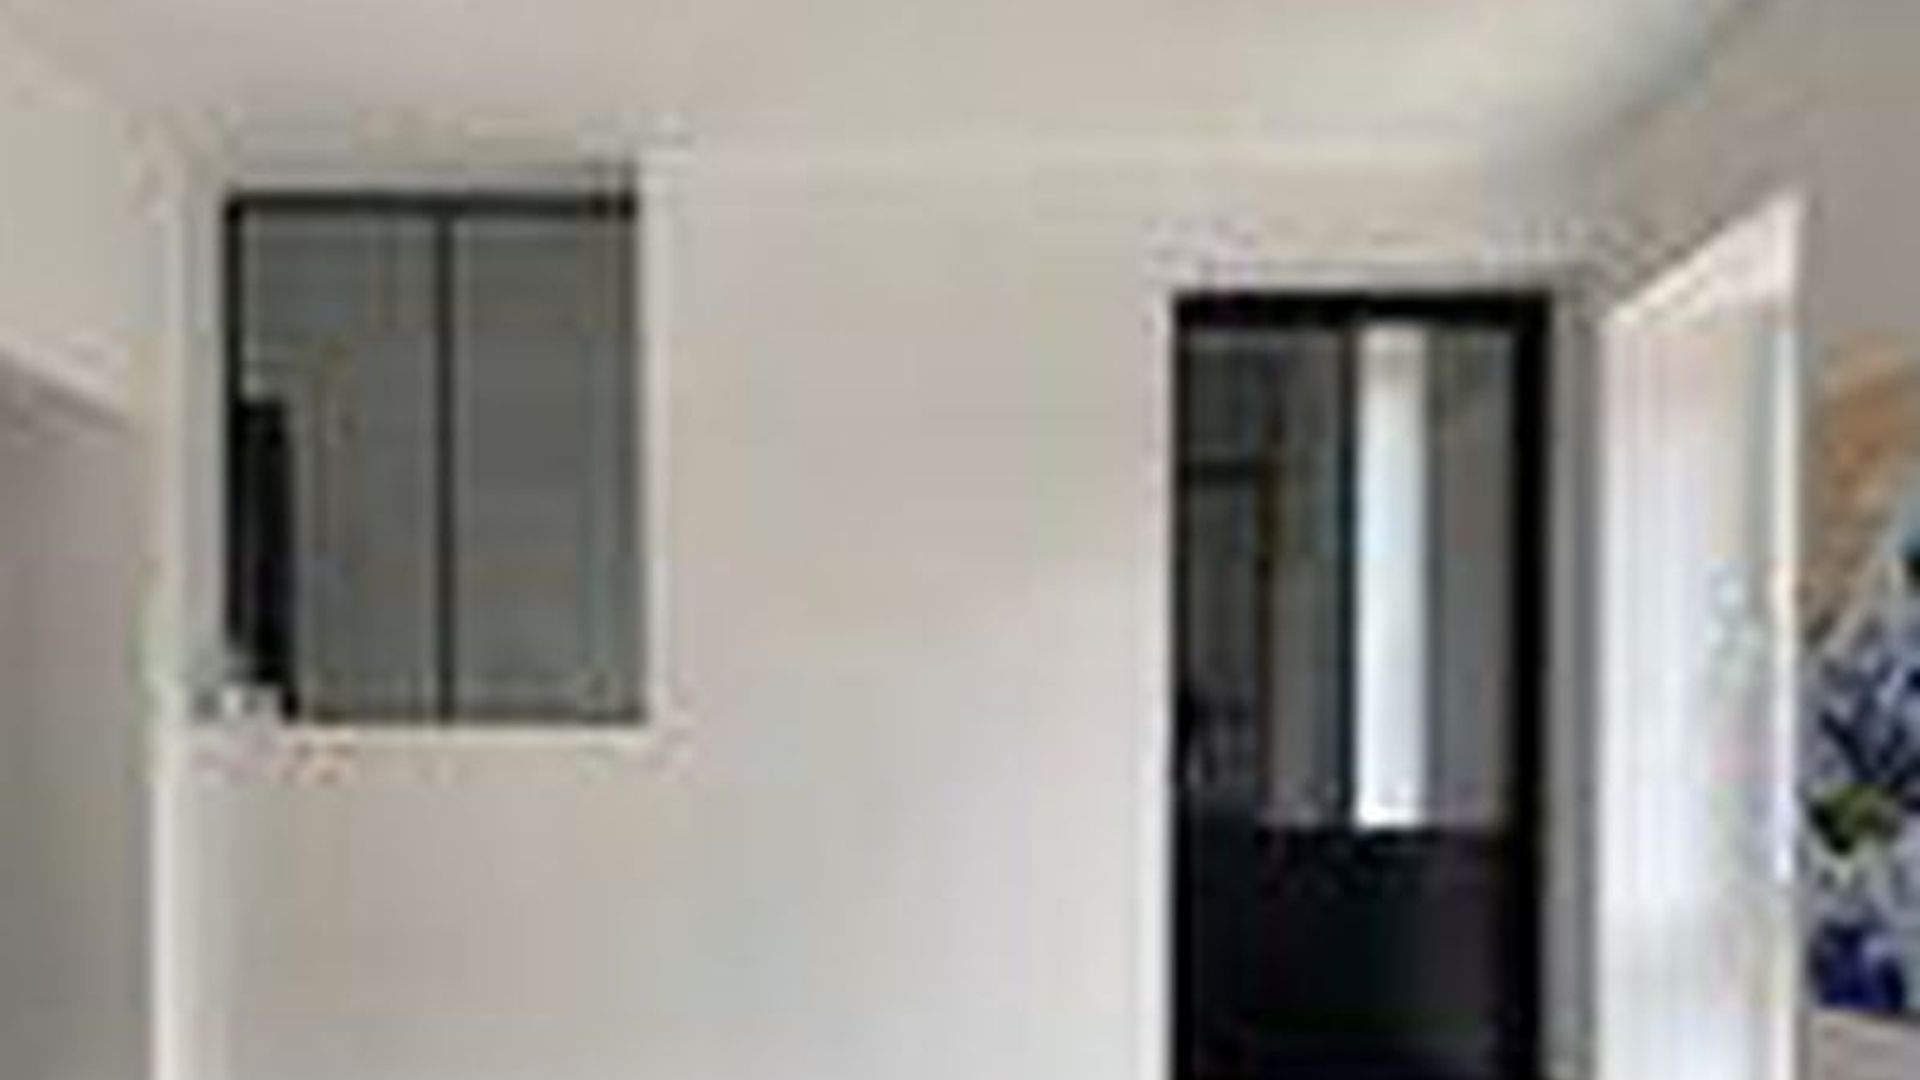 3 Bedroom Apartment At Maison Communale De Waterloo Rue Francois Libert 28 1410 Waterloo Belgium 35260393 Rentberry